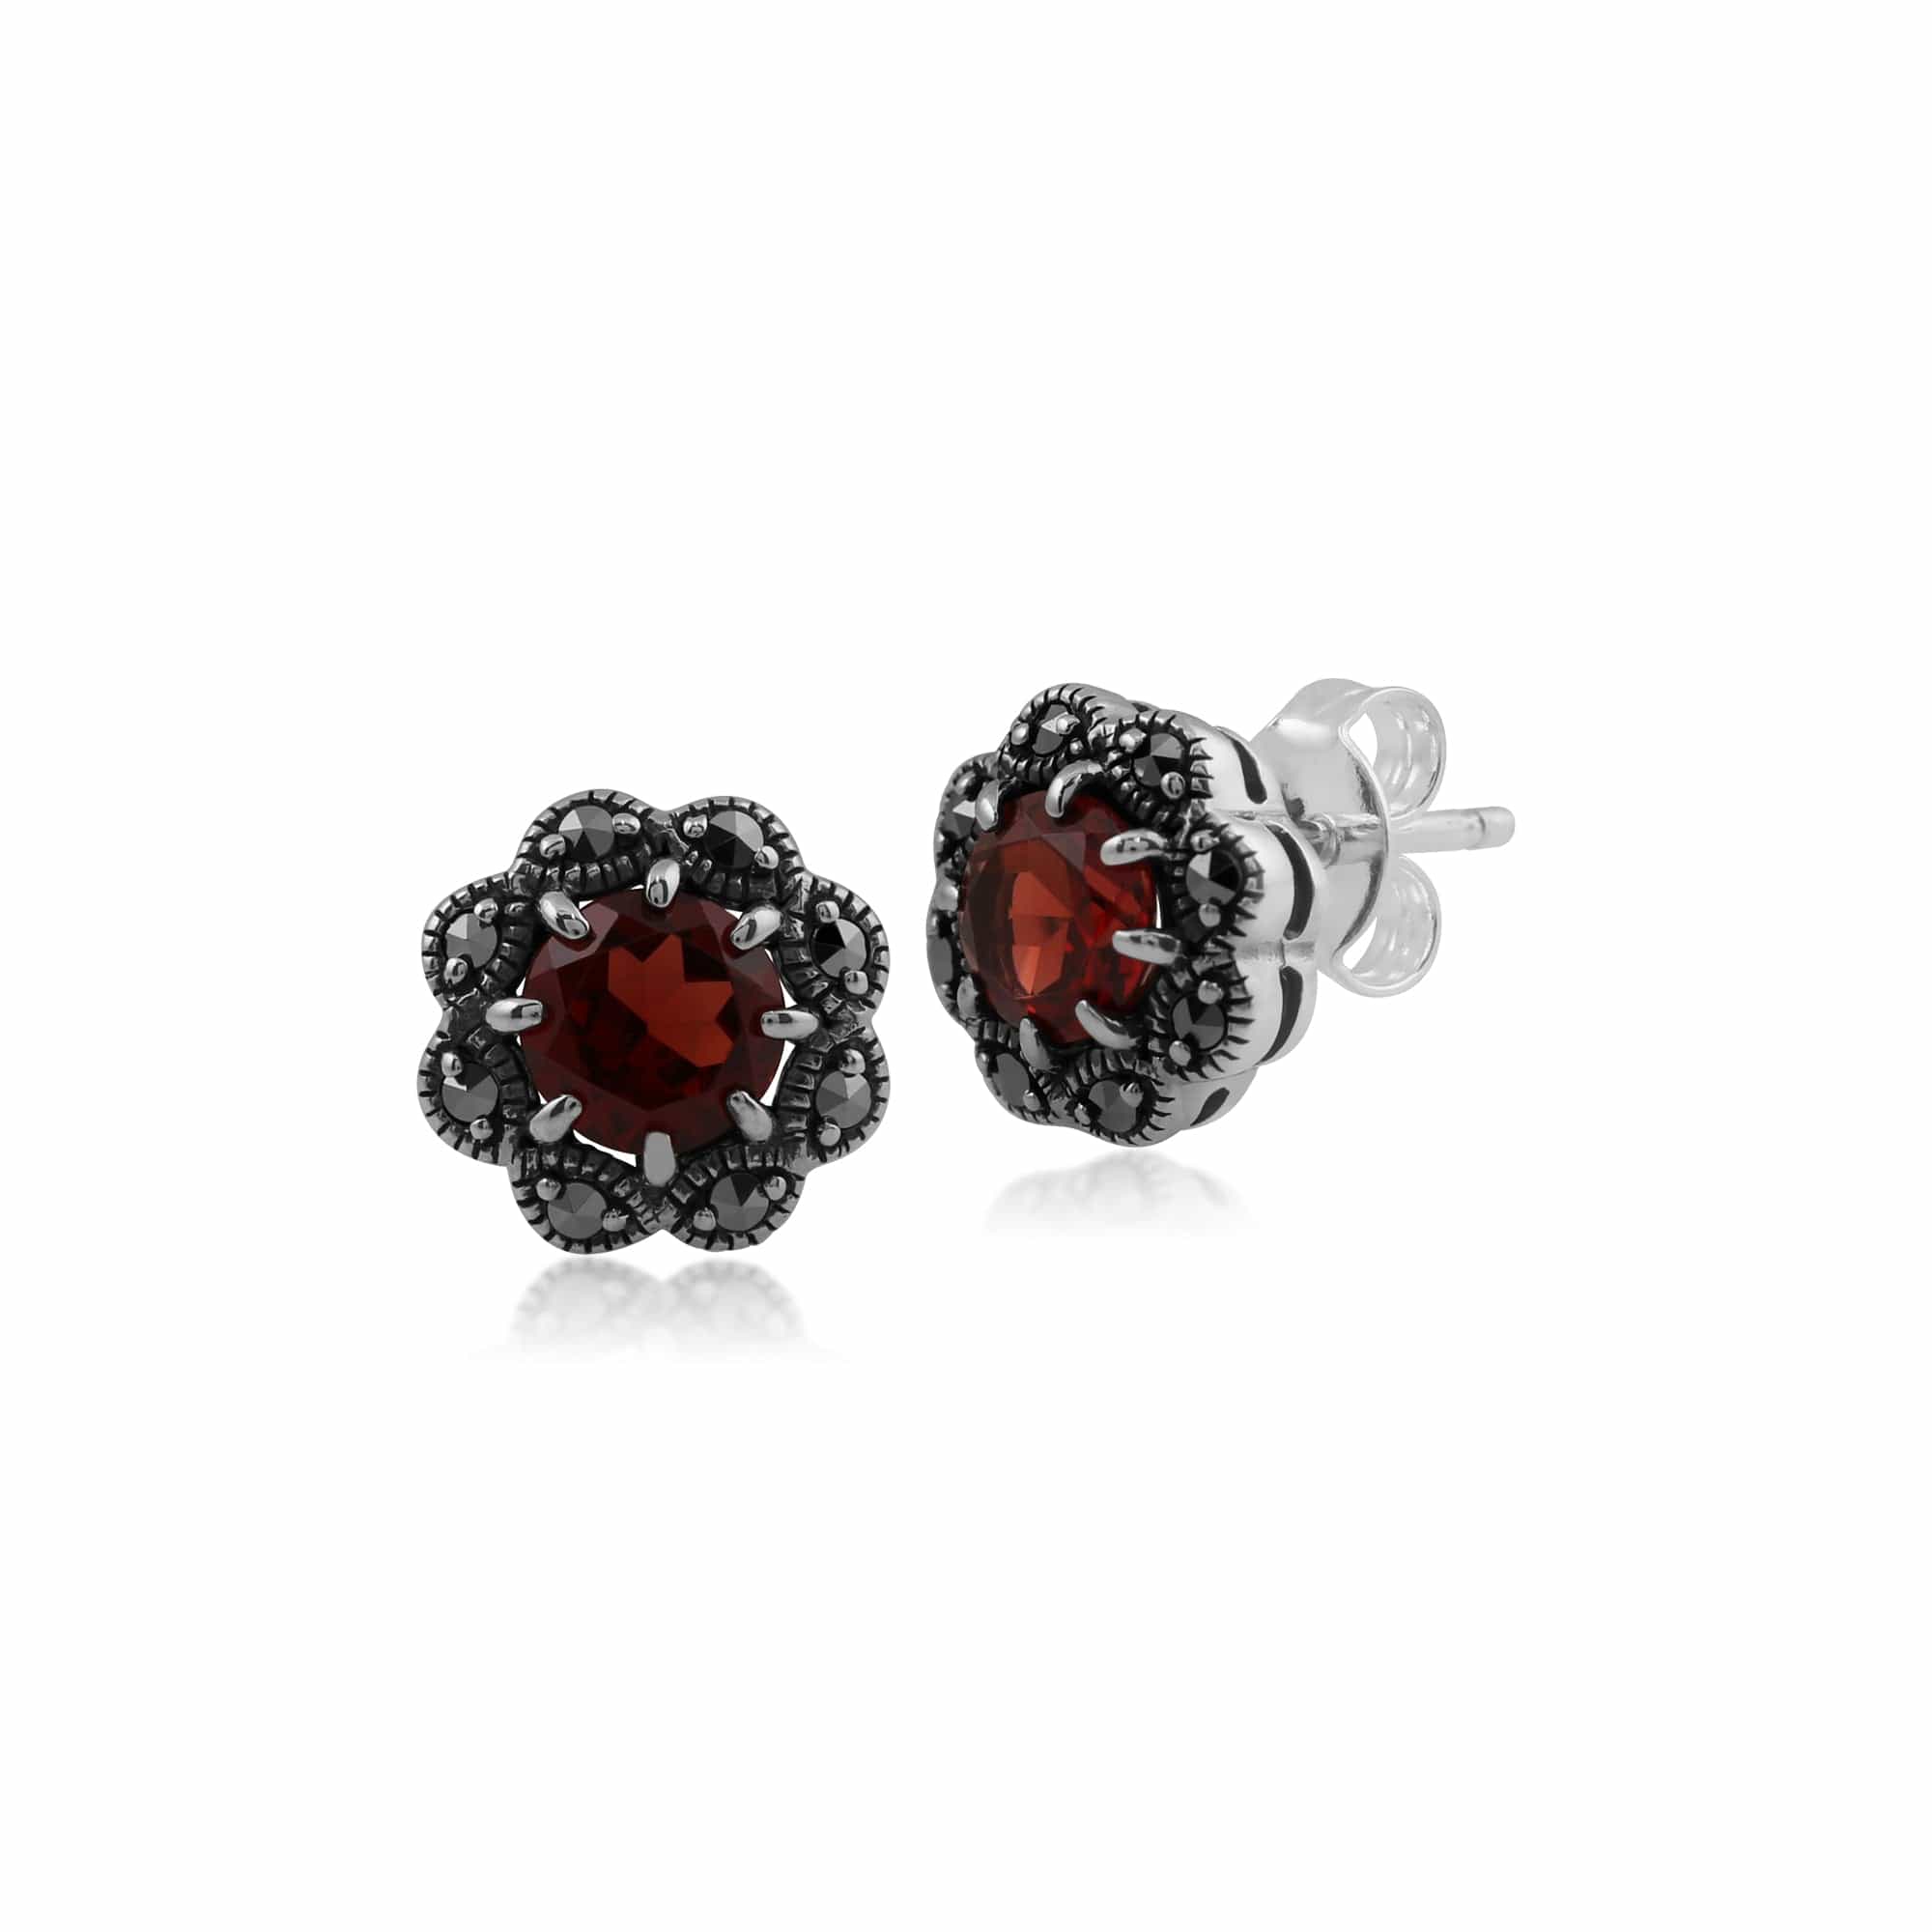 Floral Round Garnet & Marcasite Cluster Stud Earrings in 925 Sterling Silver - Gemondo